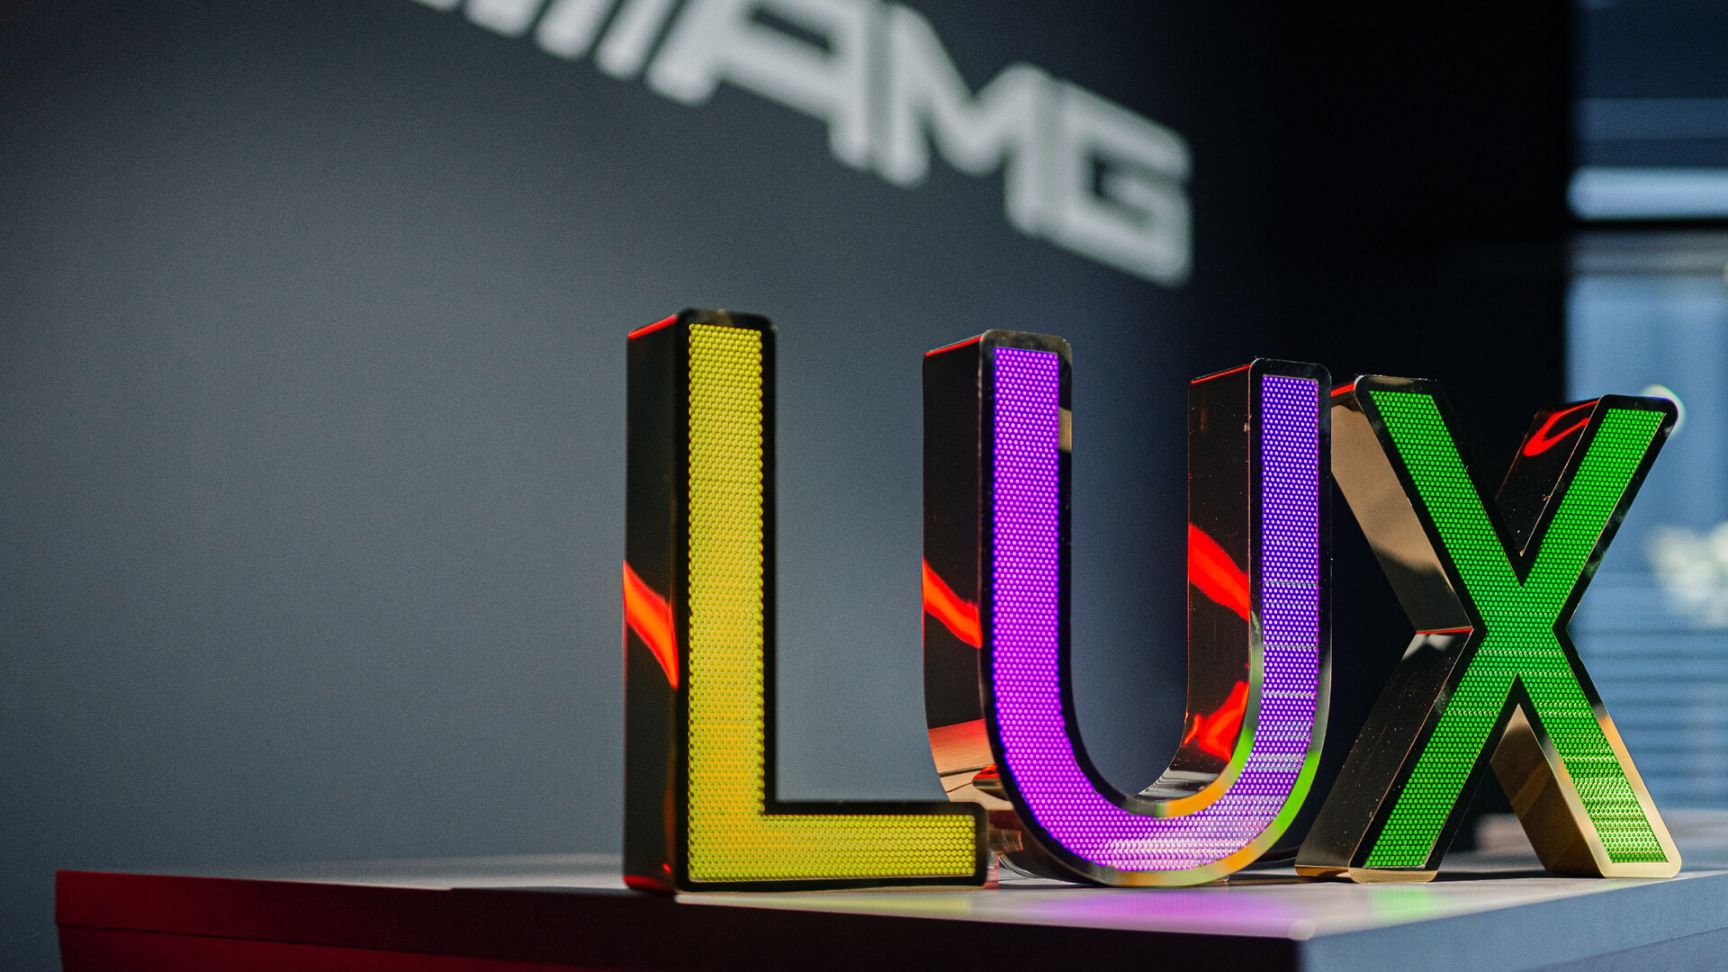 LUX geperforeerde roestvrijstalen letters - LUX belettering in geperforeerd roestvrij staal, LED backlit in drie kleuren in Mercedes showroom